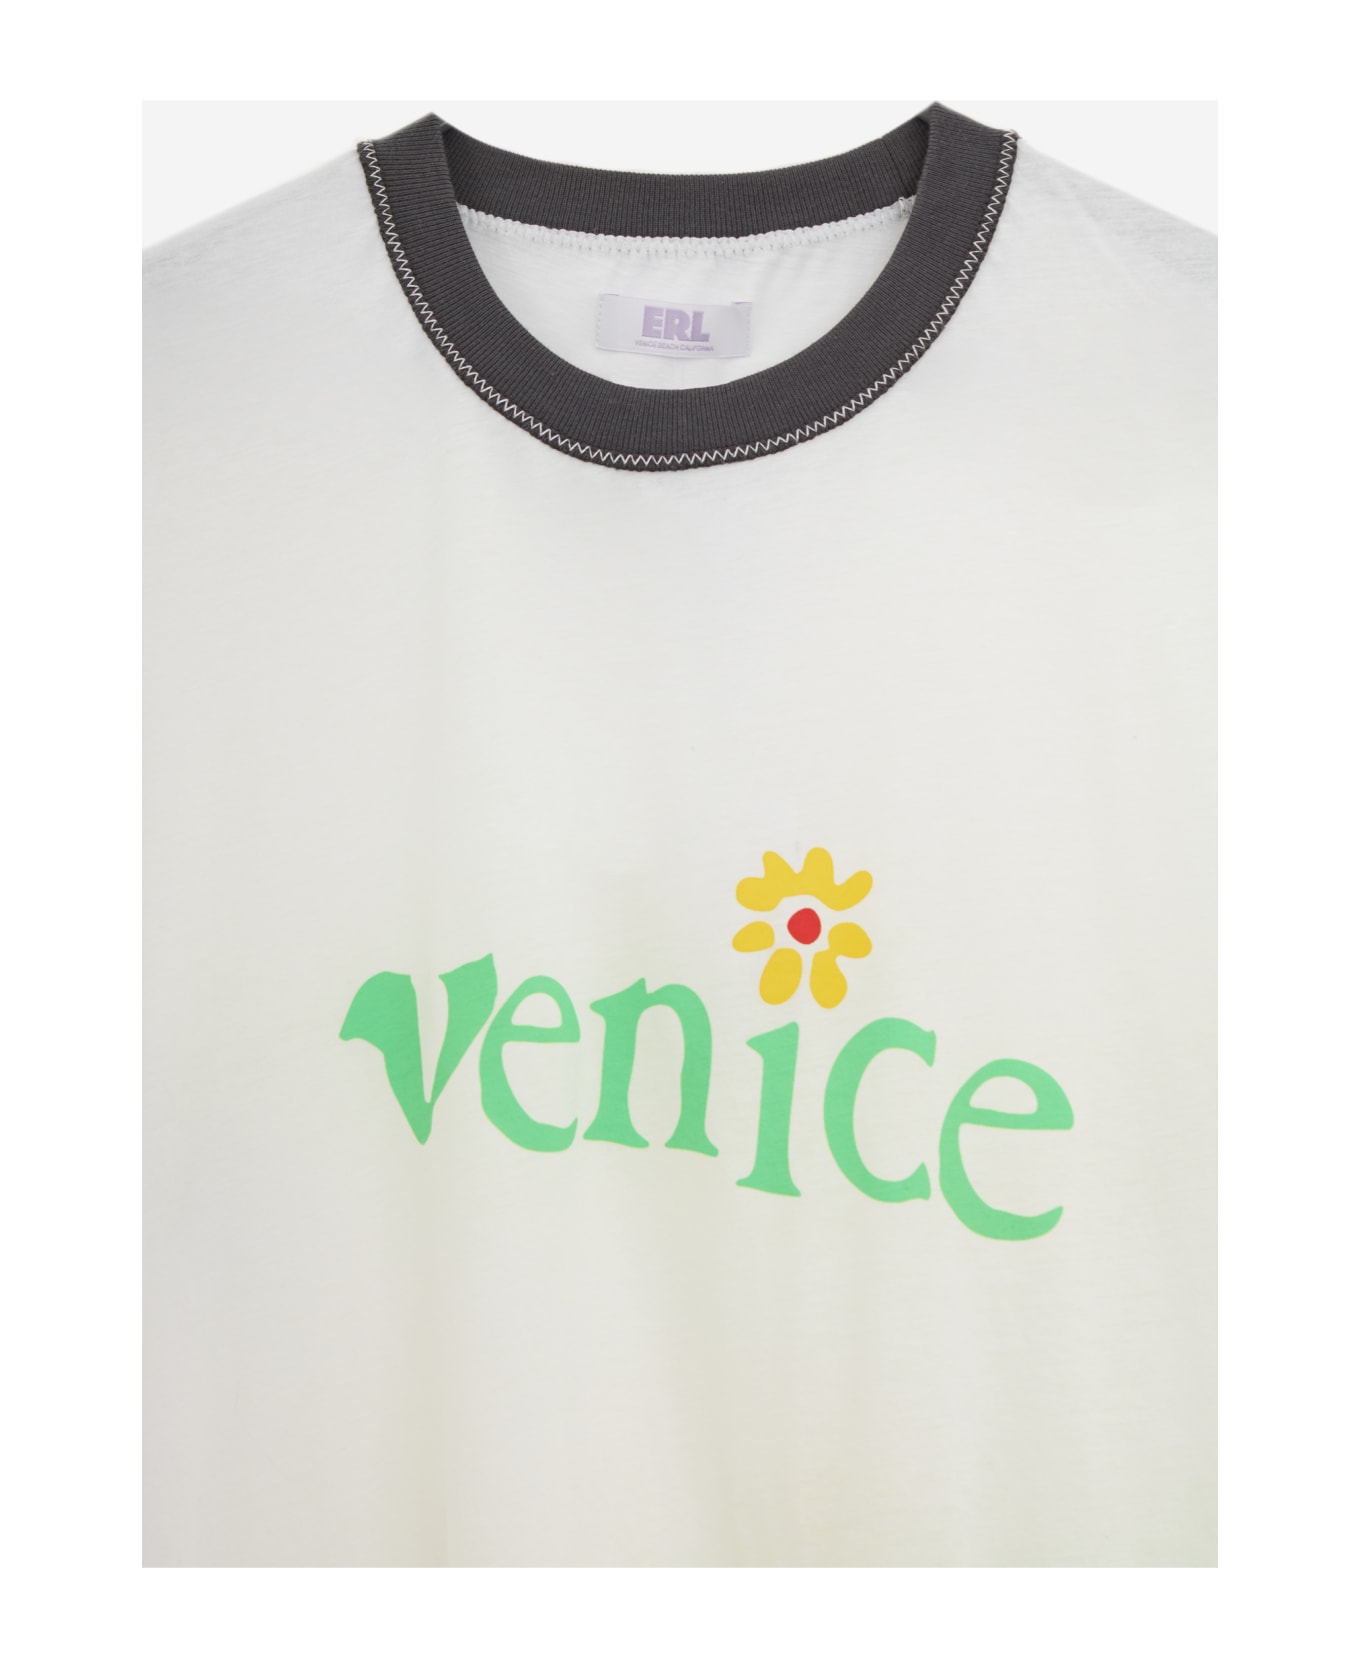 ERL Venice Tshirt T-shirt - white シャツ